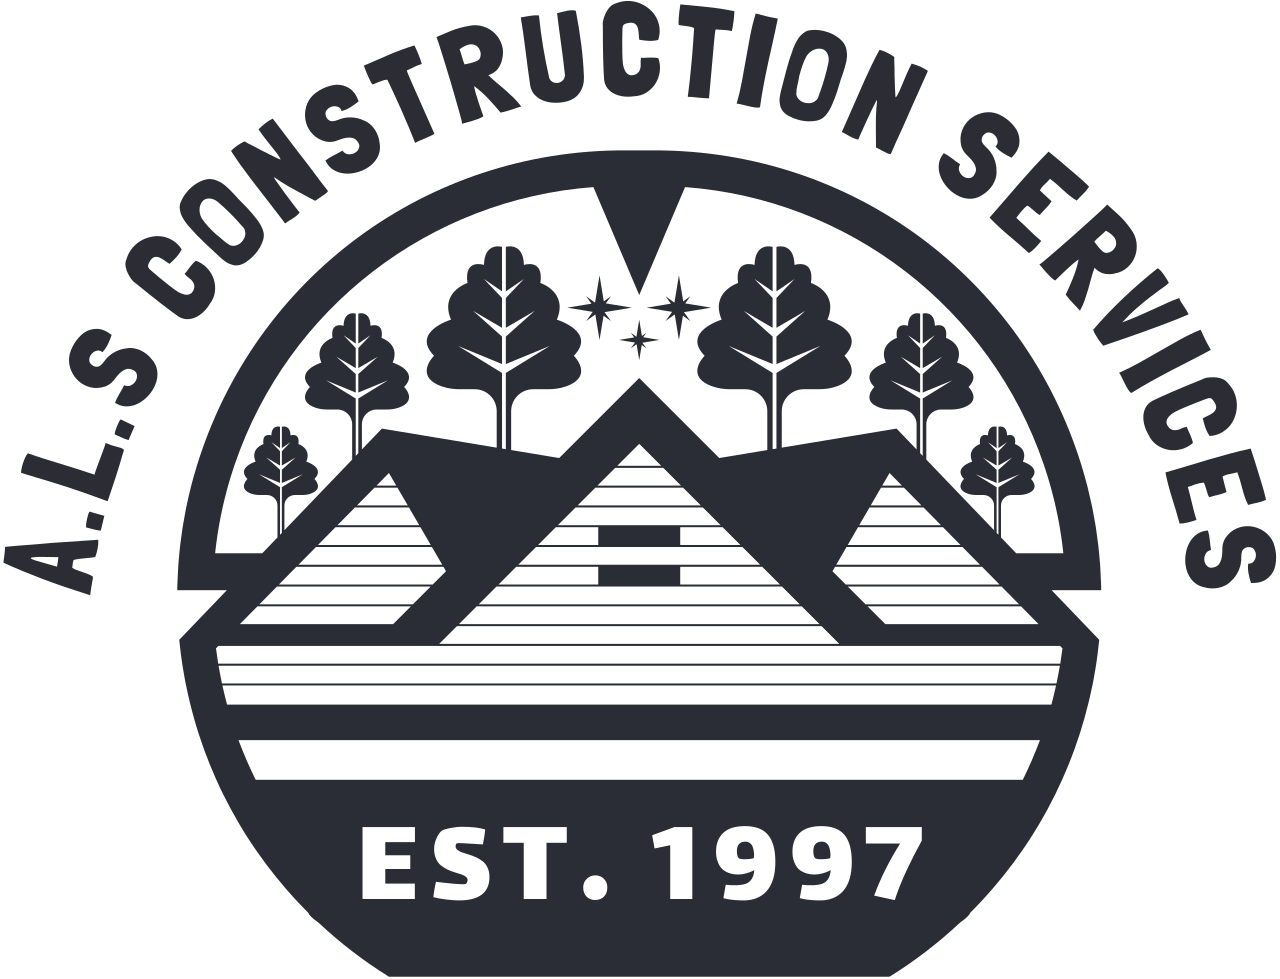 A.L.S Construction Services's logo